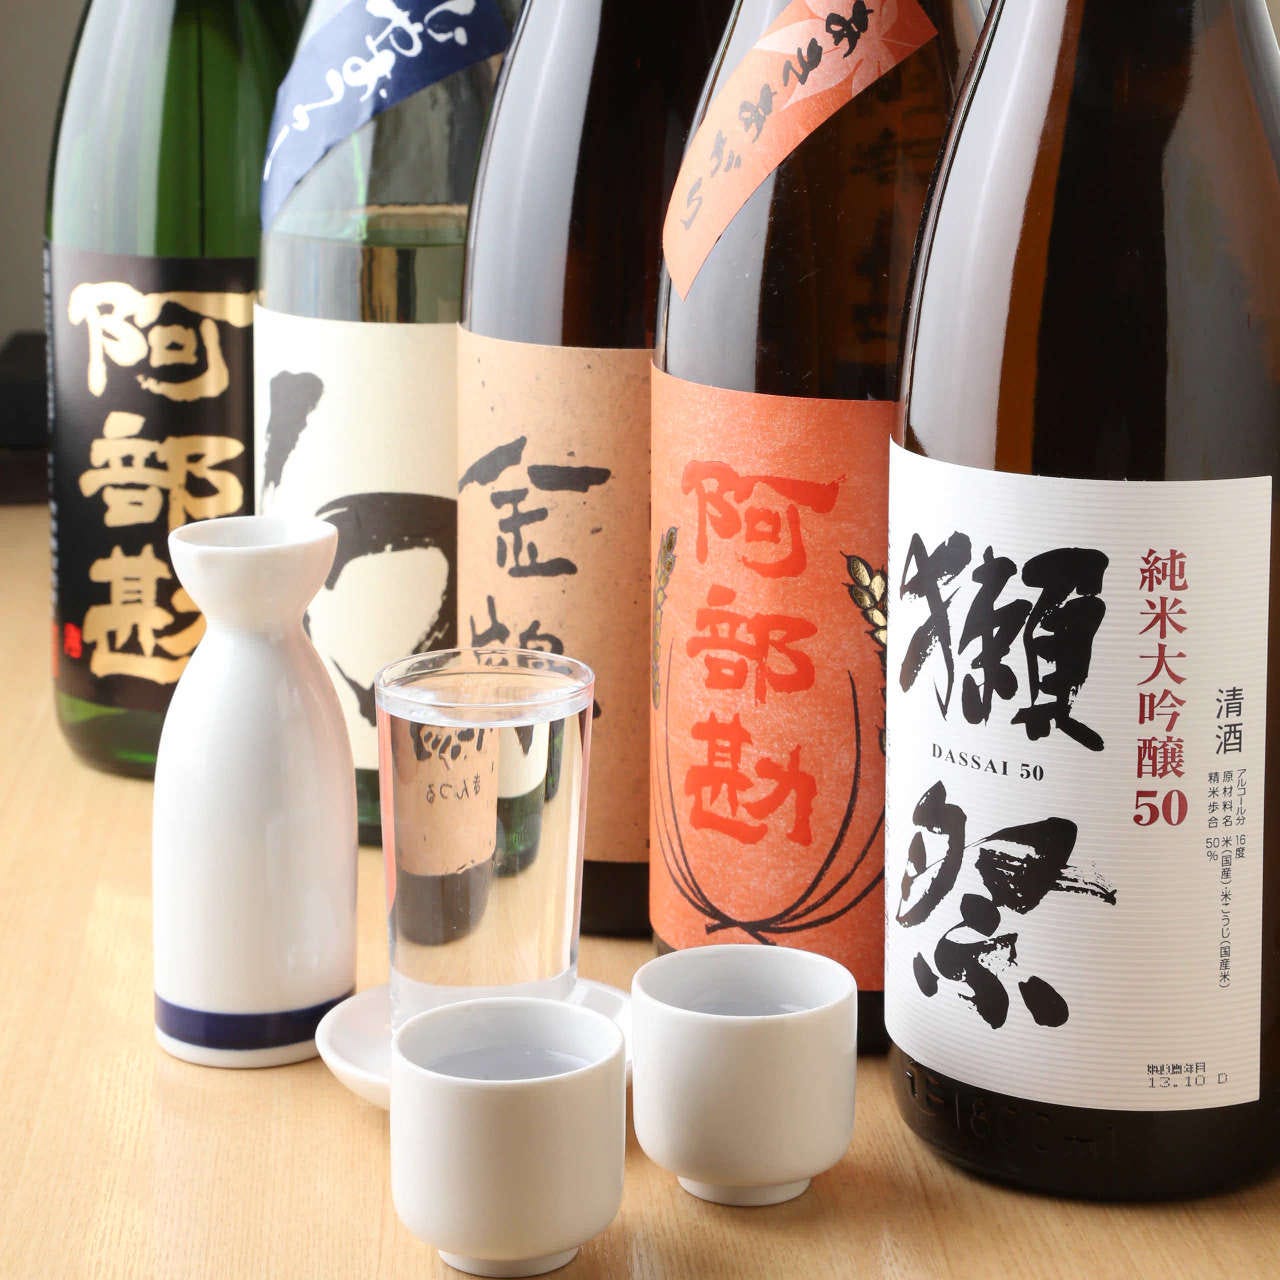 厳選日本酒や本格焼酎